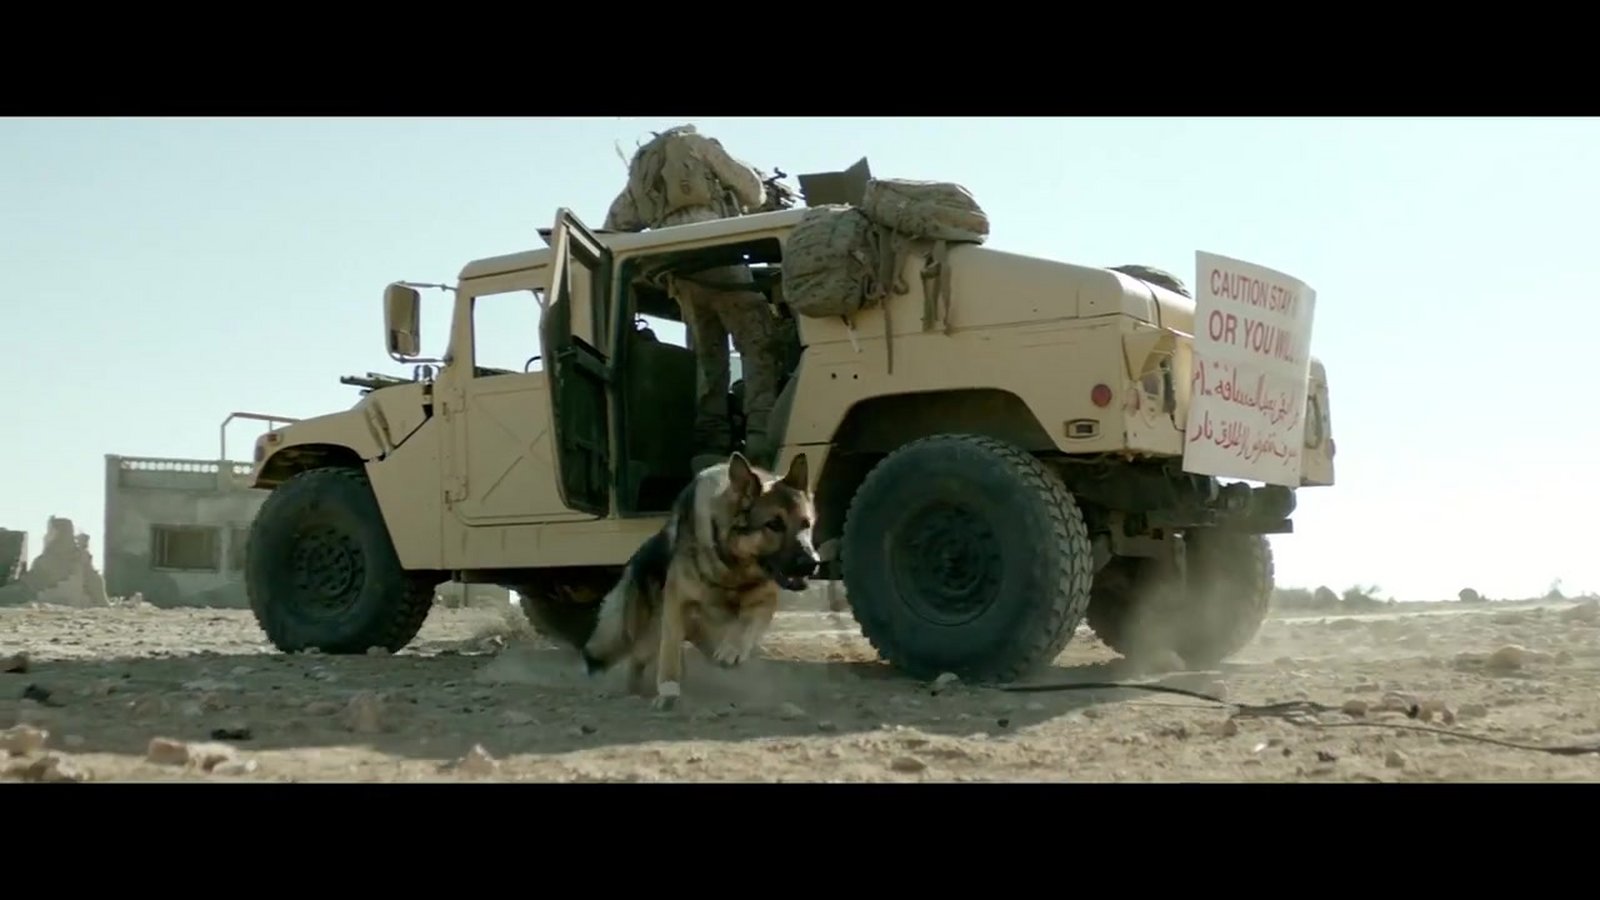 Sergeant Rex – Nicht ohne meinen Hund auf Blu-ray zu gewinnen   FASHIONPAPER – das Magazin für Fashion, Beauty und Lifestyle